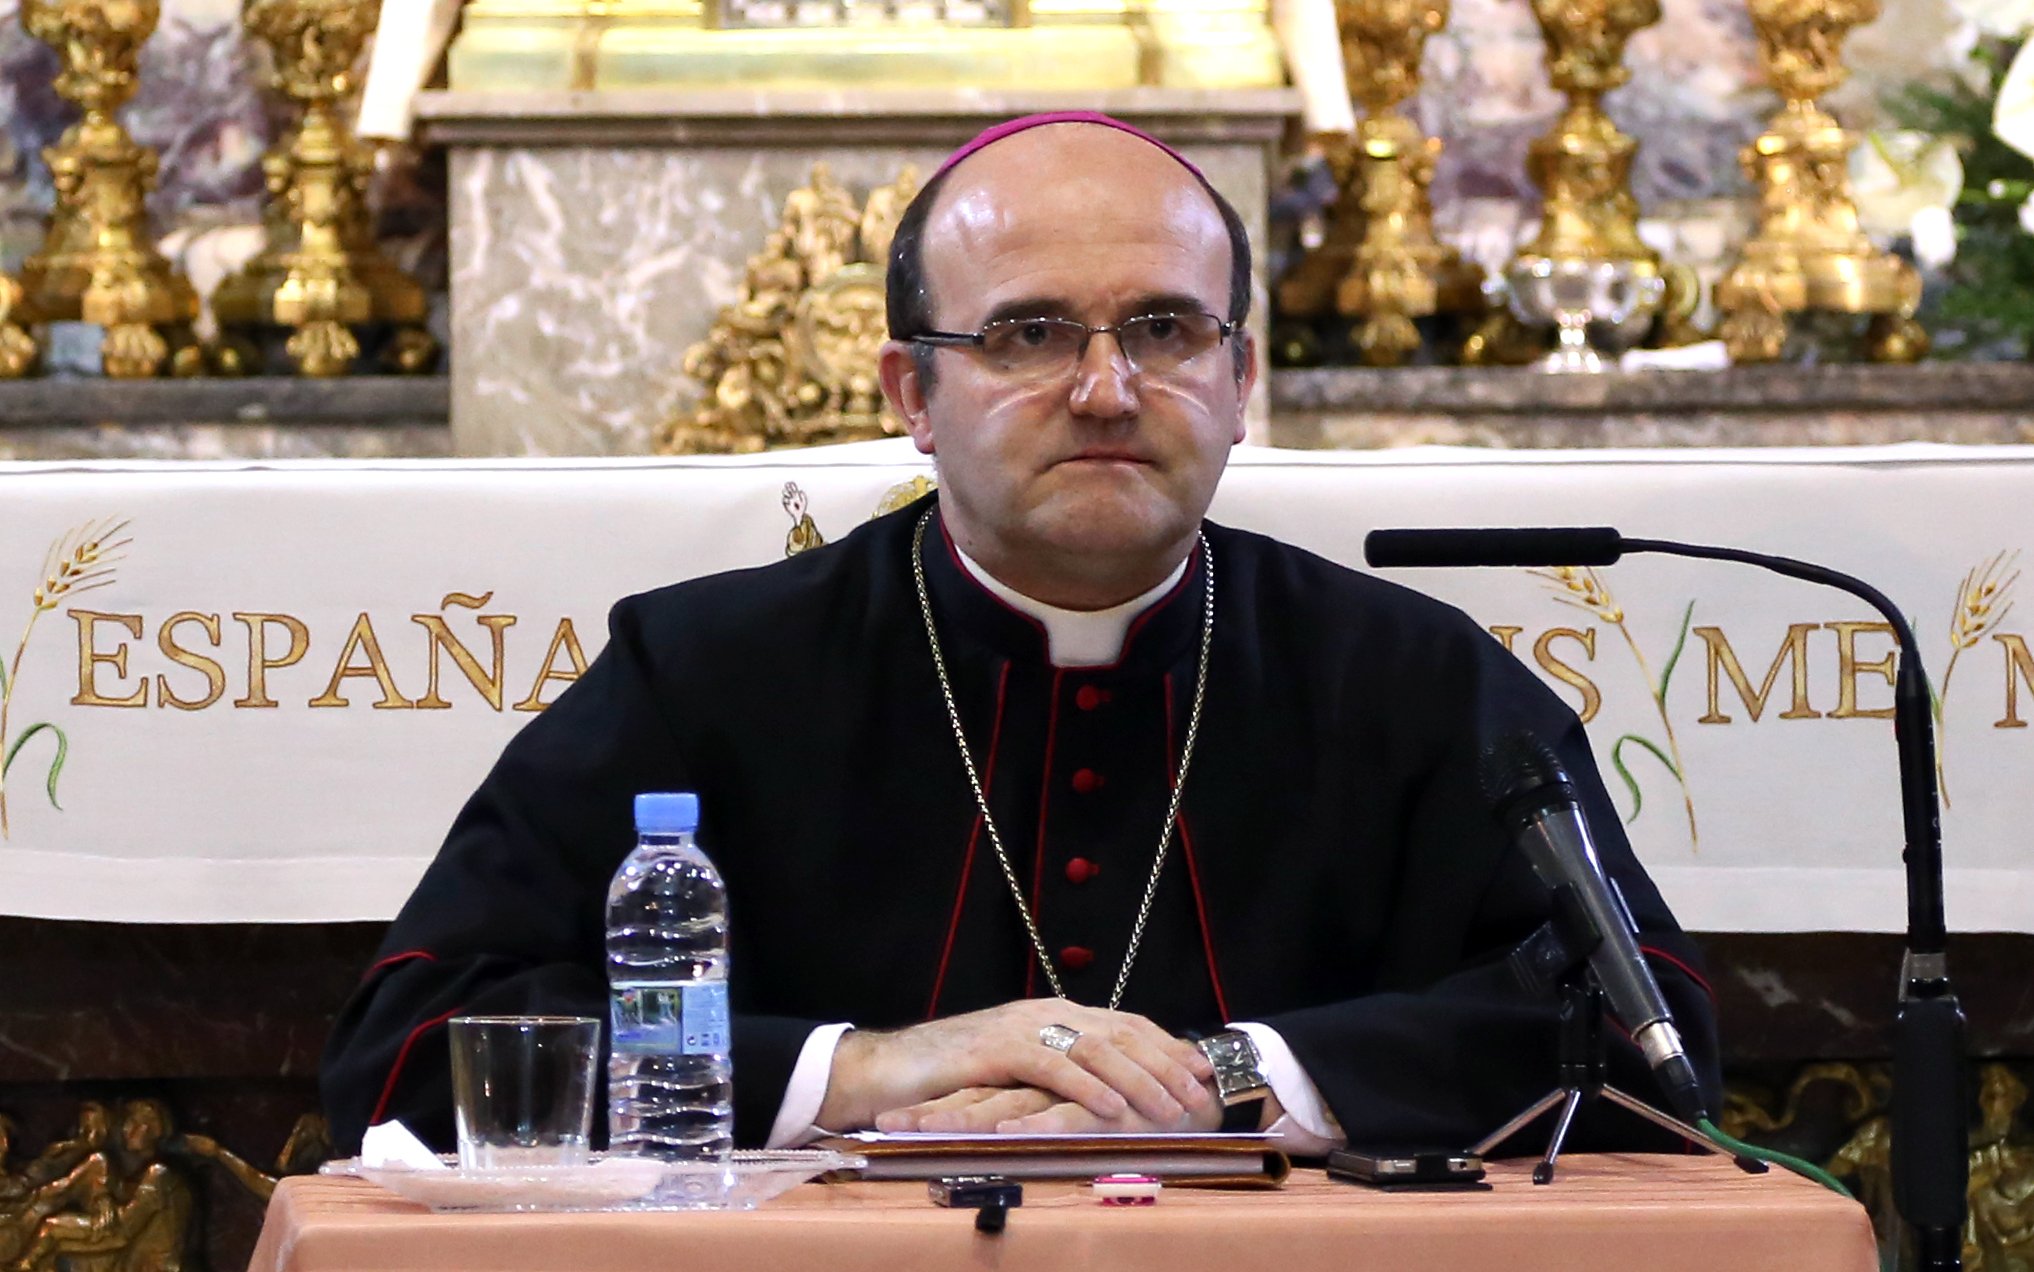 El obispo de San Sebastián acusa al feminismo de llevar "el demonio" dentro